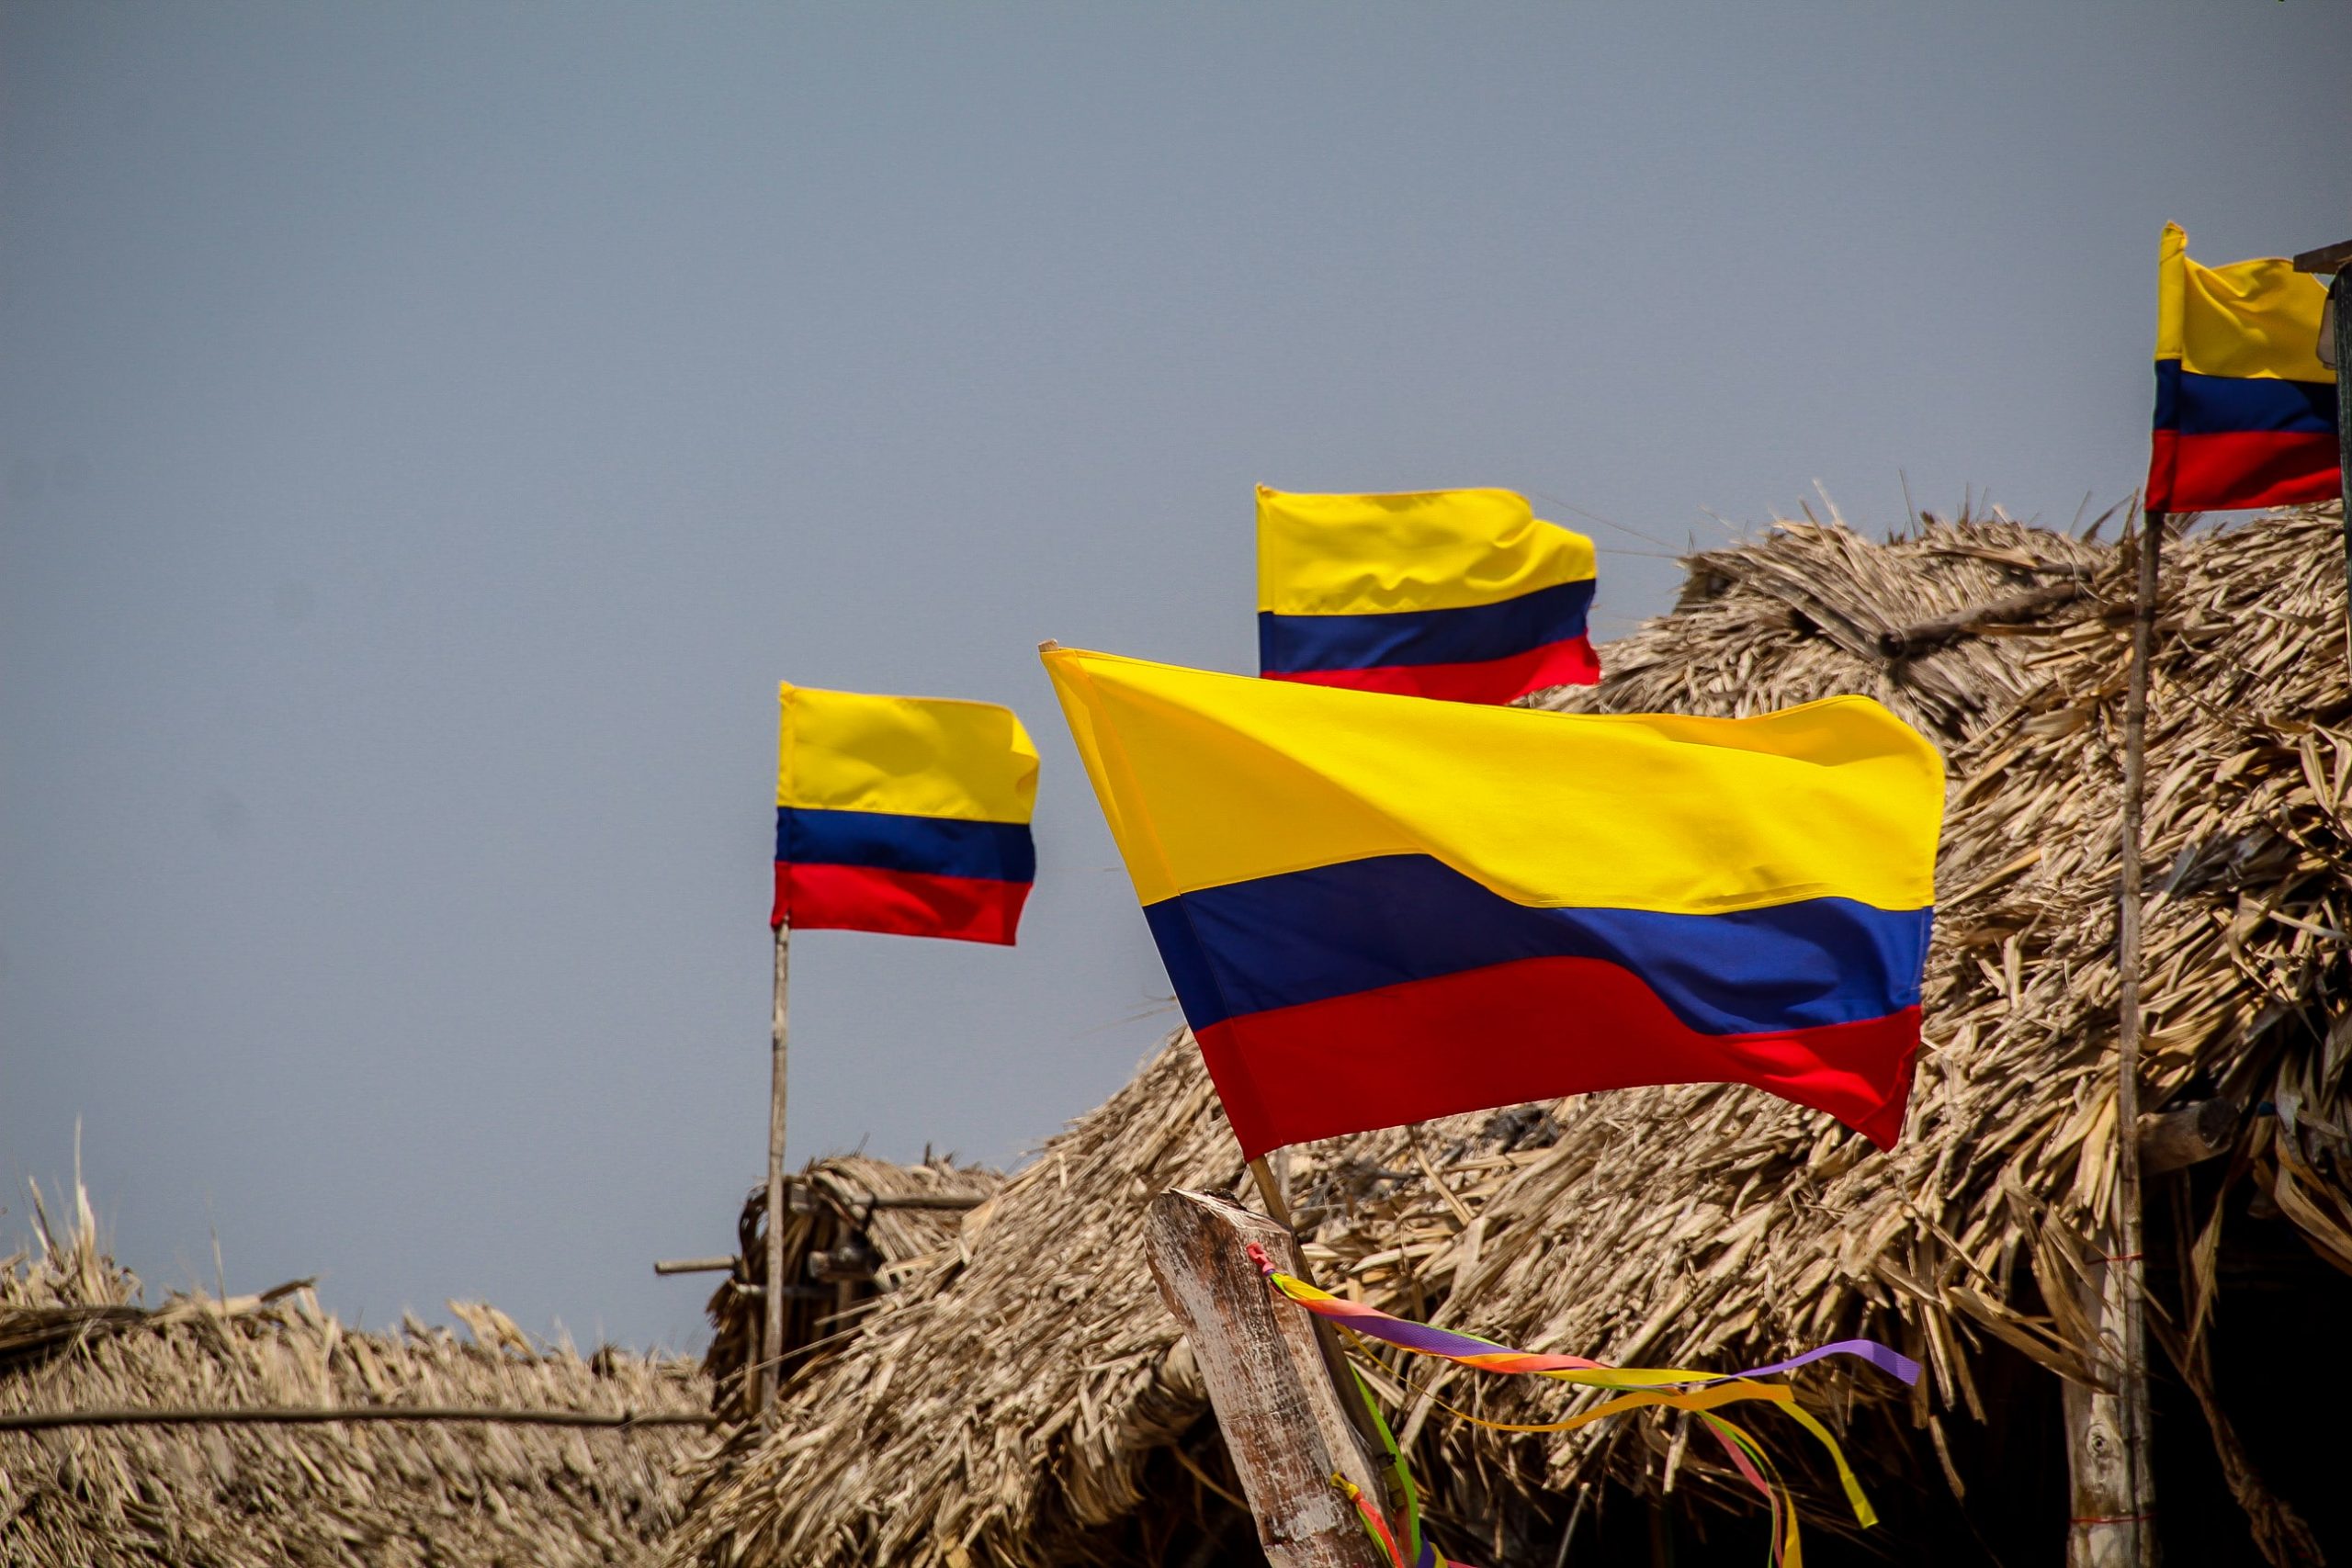 Steagul național simbolizează independența Columbiei față de Spania, obținută în 1810